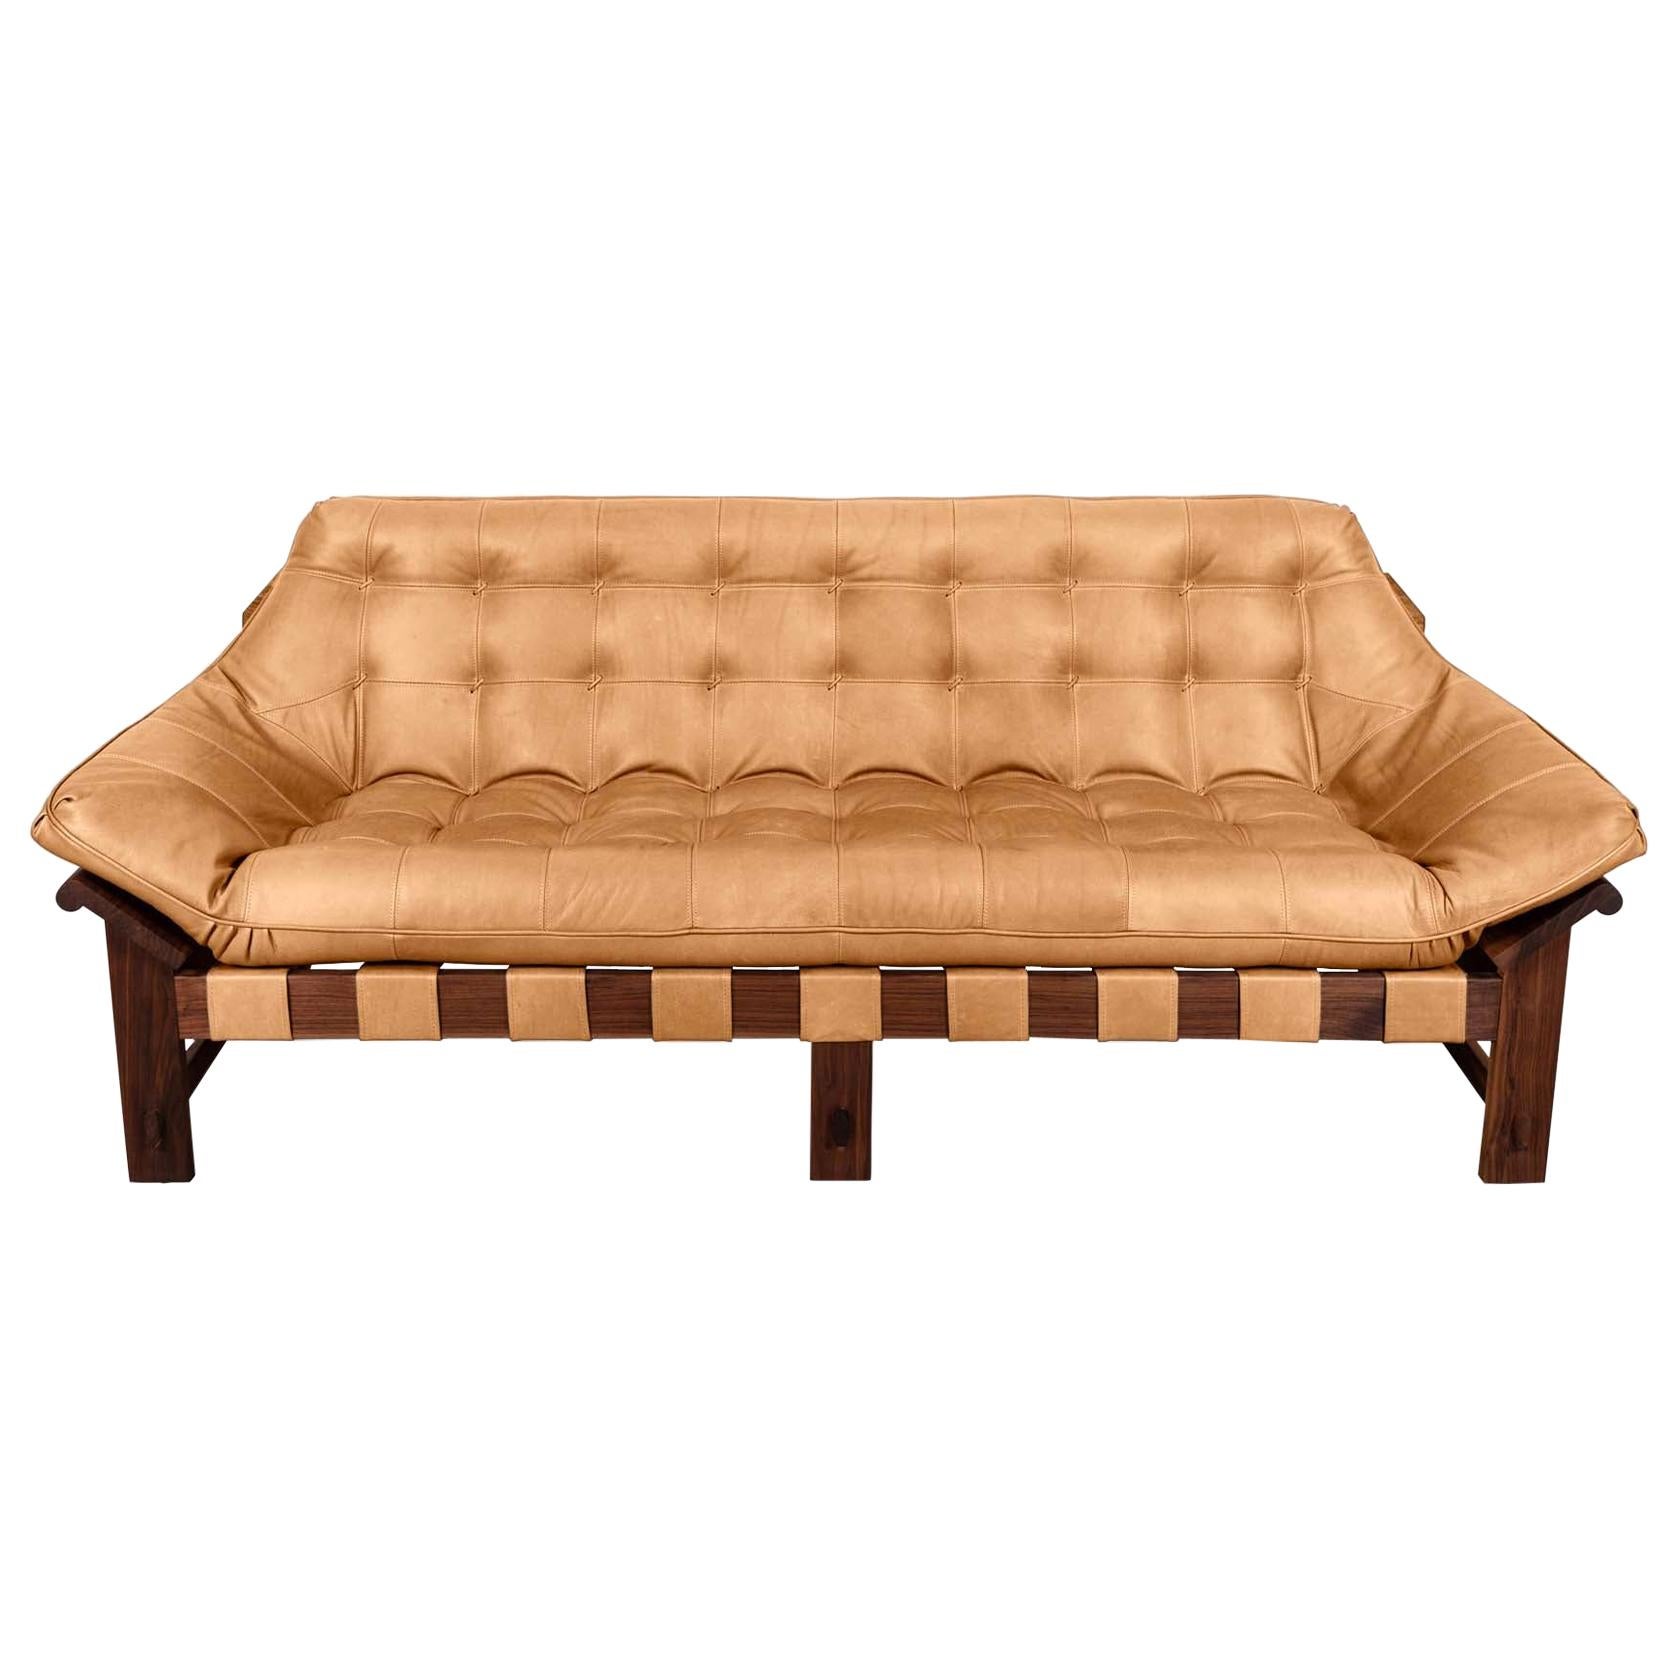 Tan Leather and Walnut Ojai Sofa by Lawson-Fenning